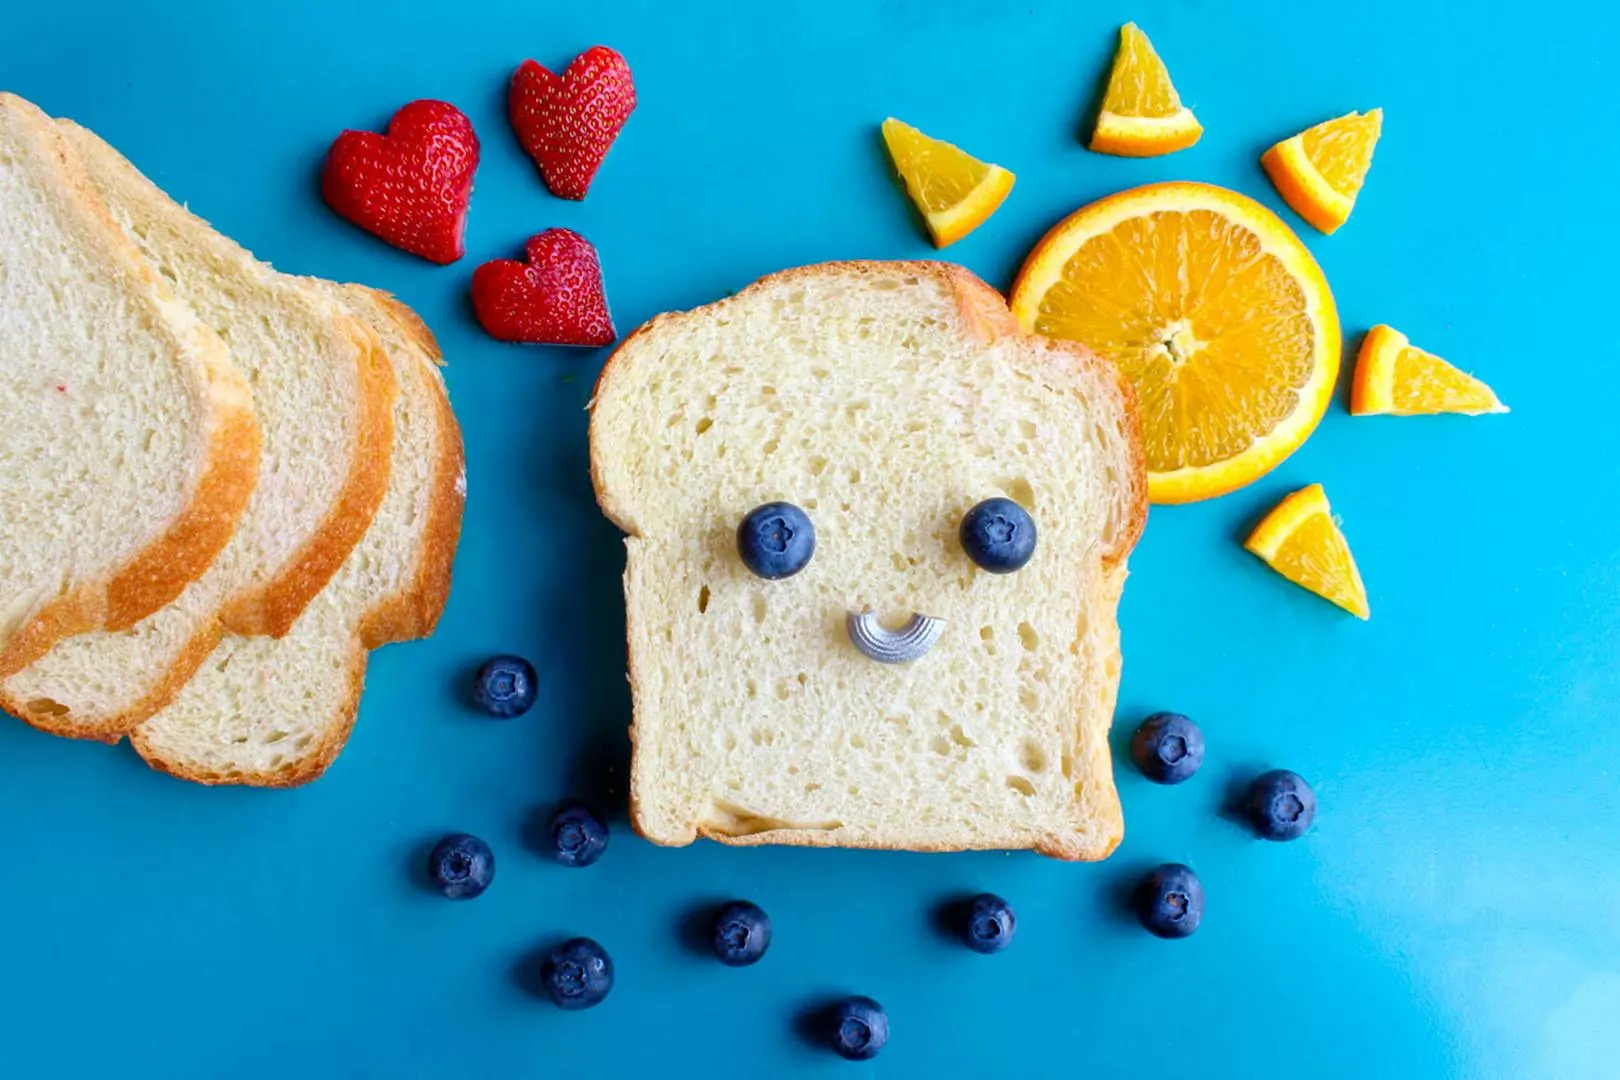 Barnemat Blogg: Guide til næringsrik og smakfull måltidsplanlegging for de minste